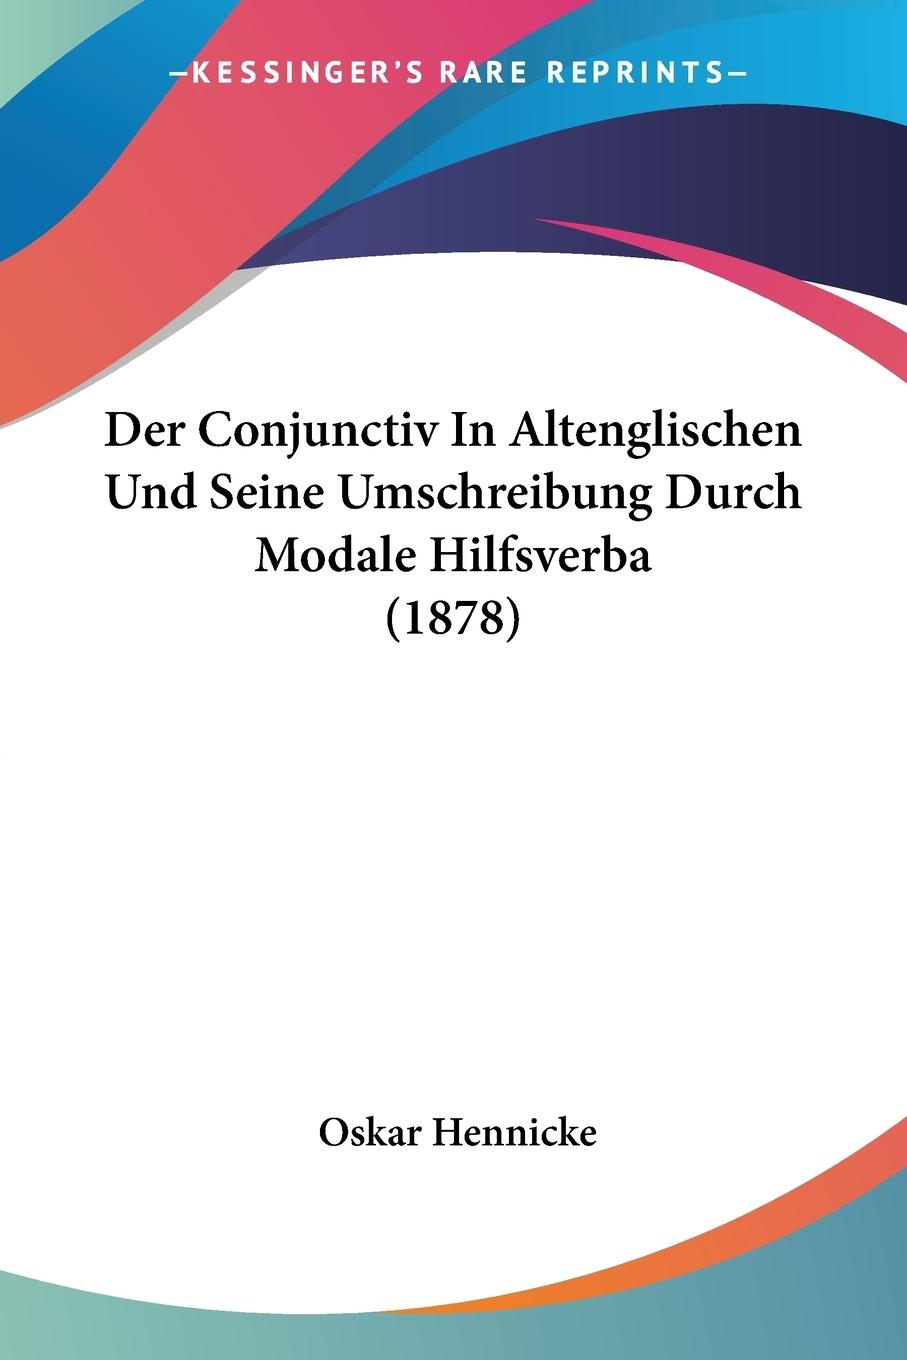 Der Conjunctiv In Altenglischen Und Seine Umschreibung Durch Modale Hilfsverba (1878) - Hennicke, Oskar